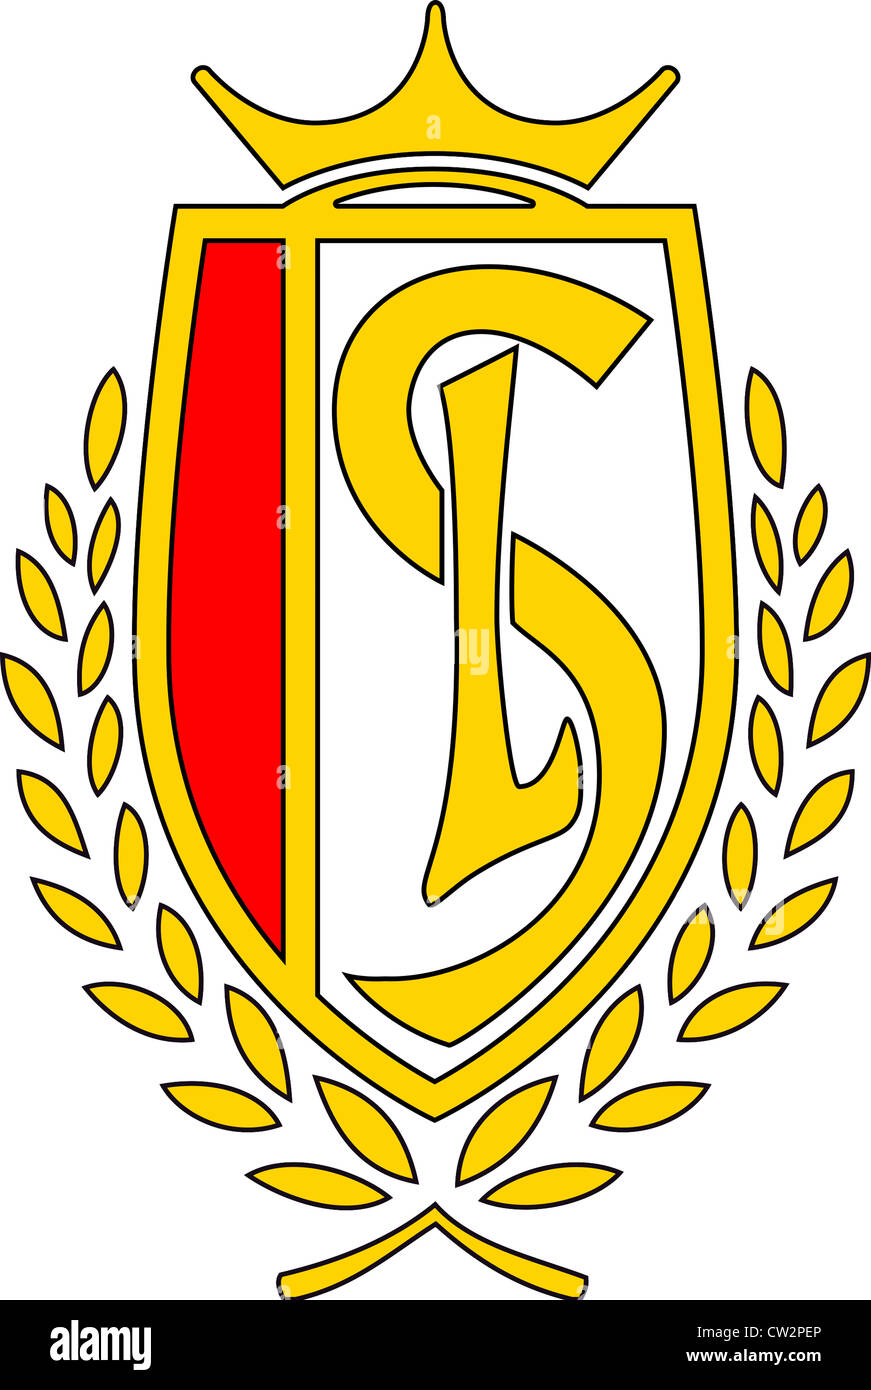 Logo of Belgian football team Standard Liege - Royal Standard de Liege. Stock Photo